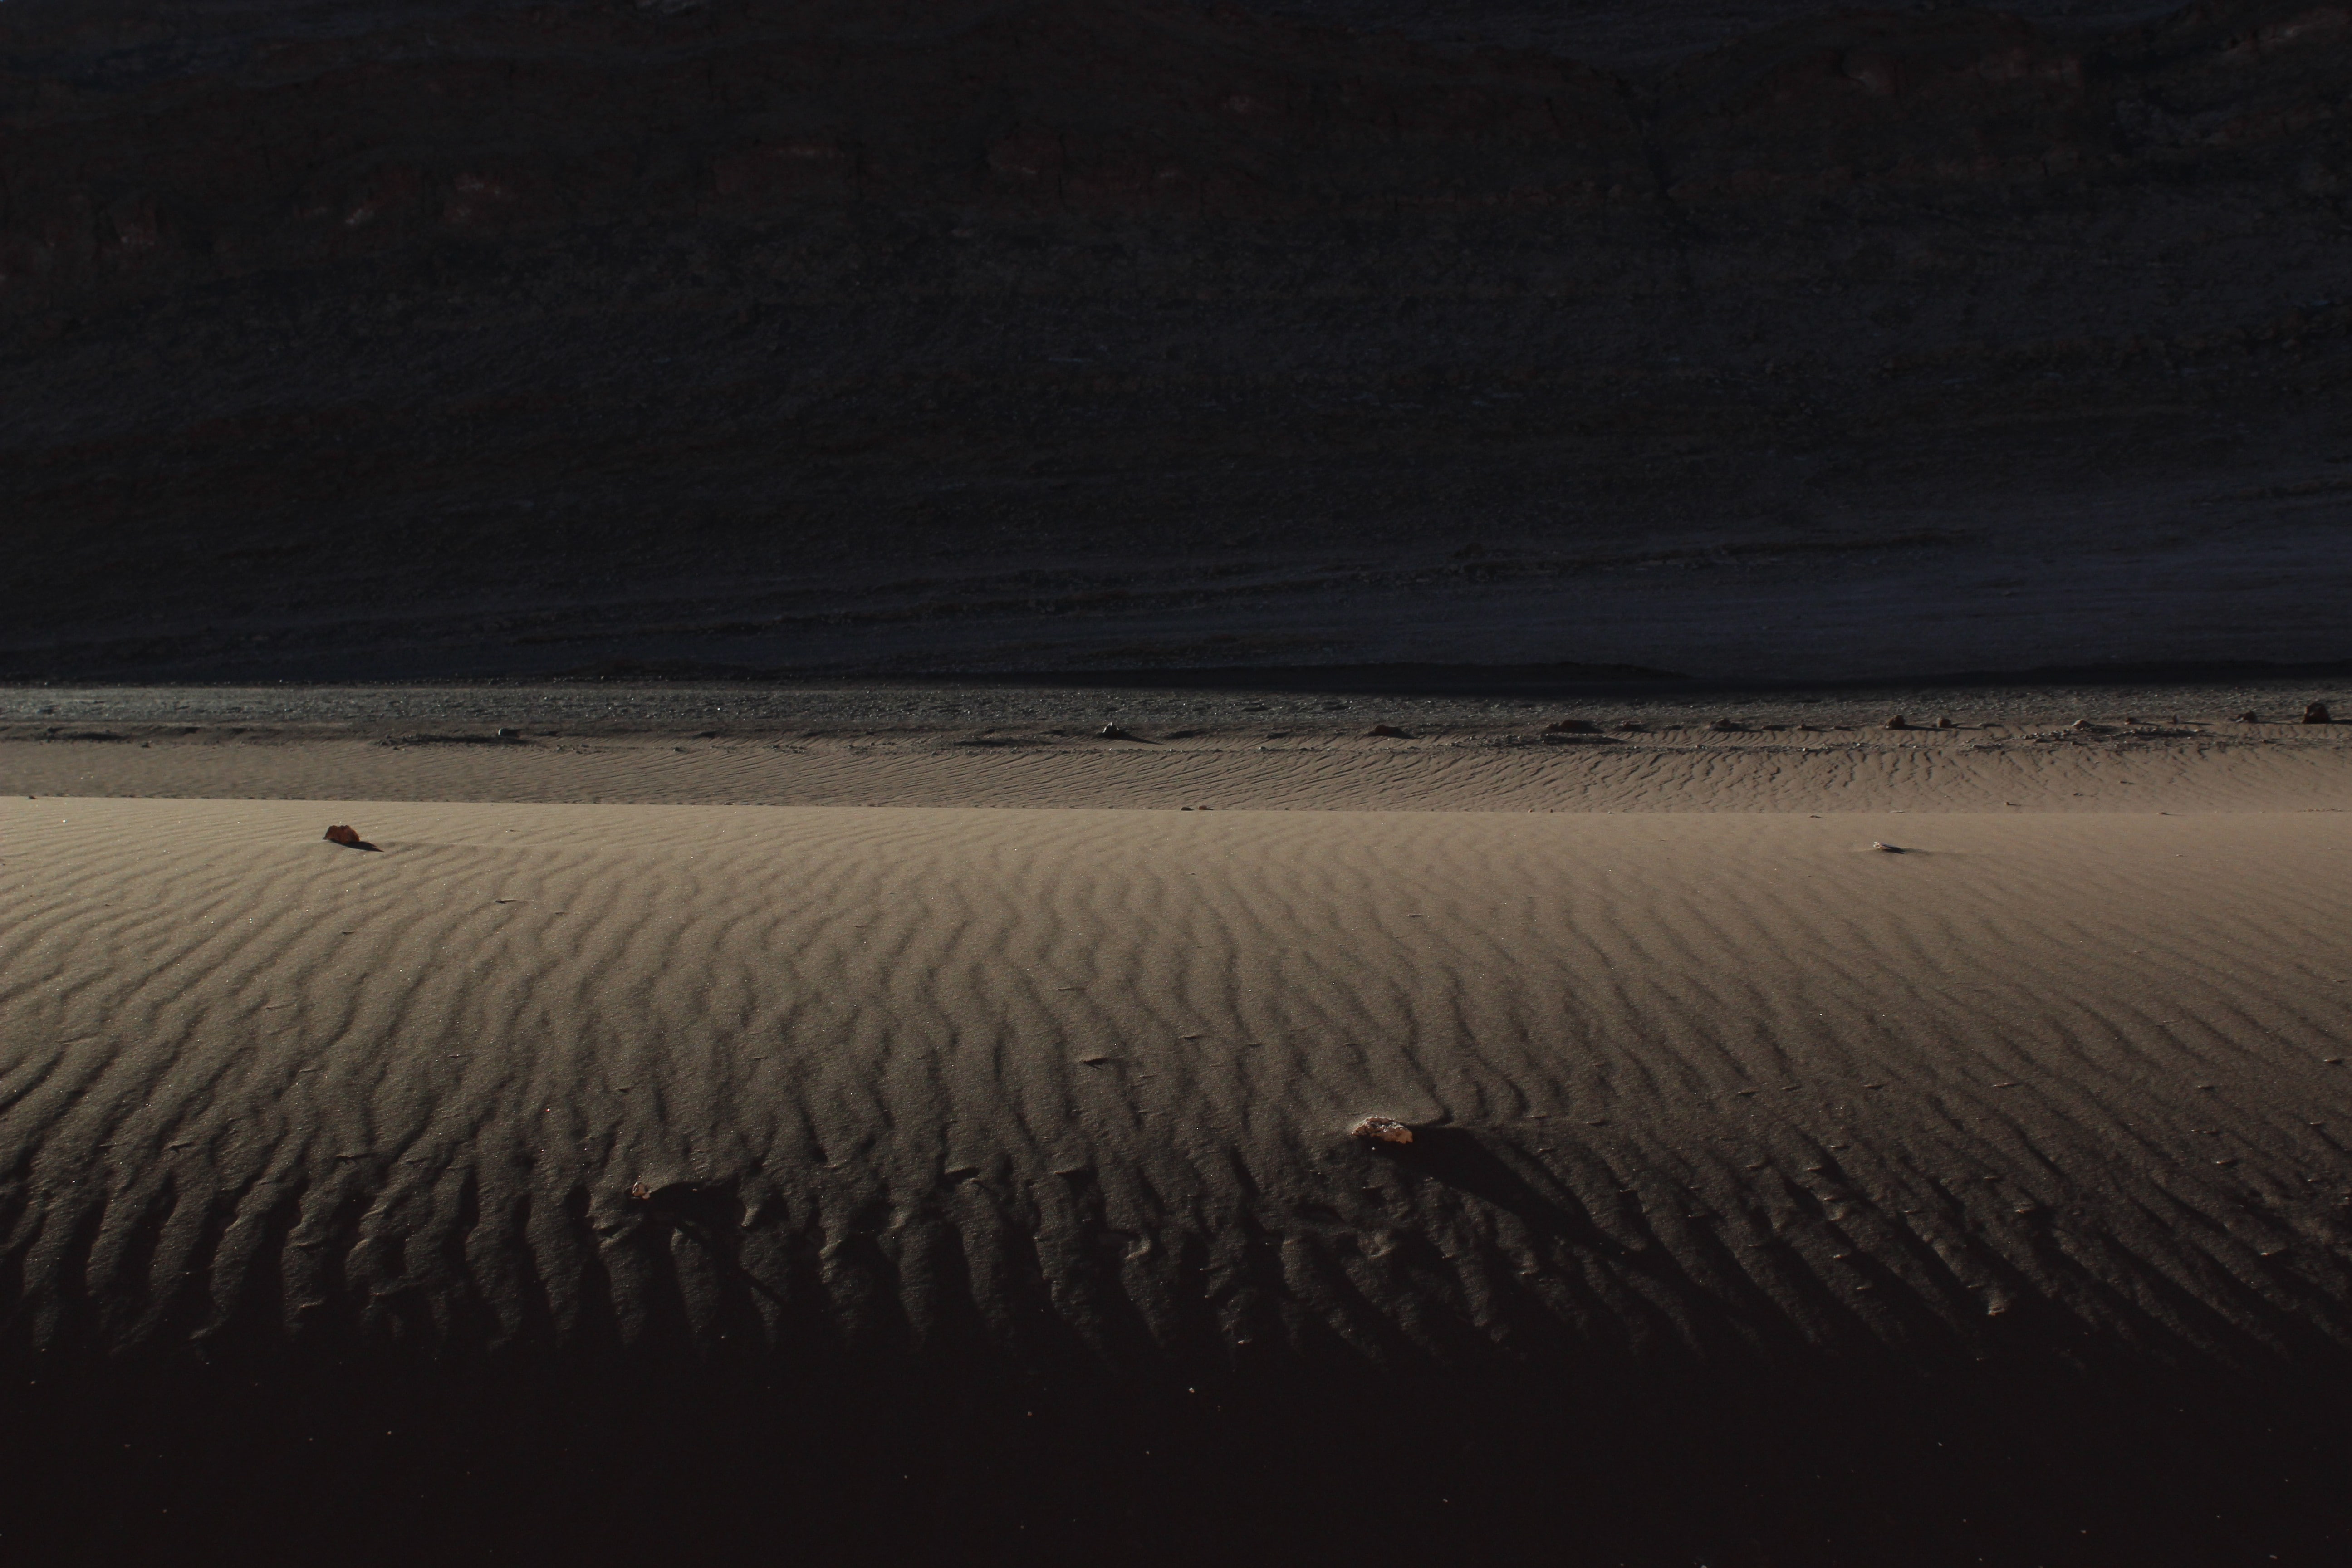 lights, dune, daylight, Chile, desert, Atacama Desert, land